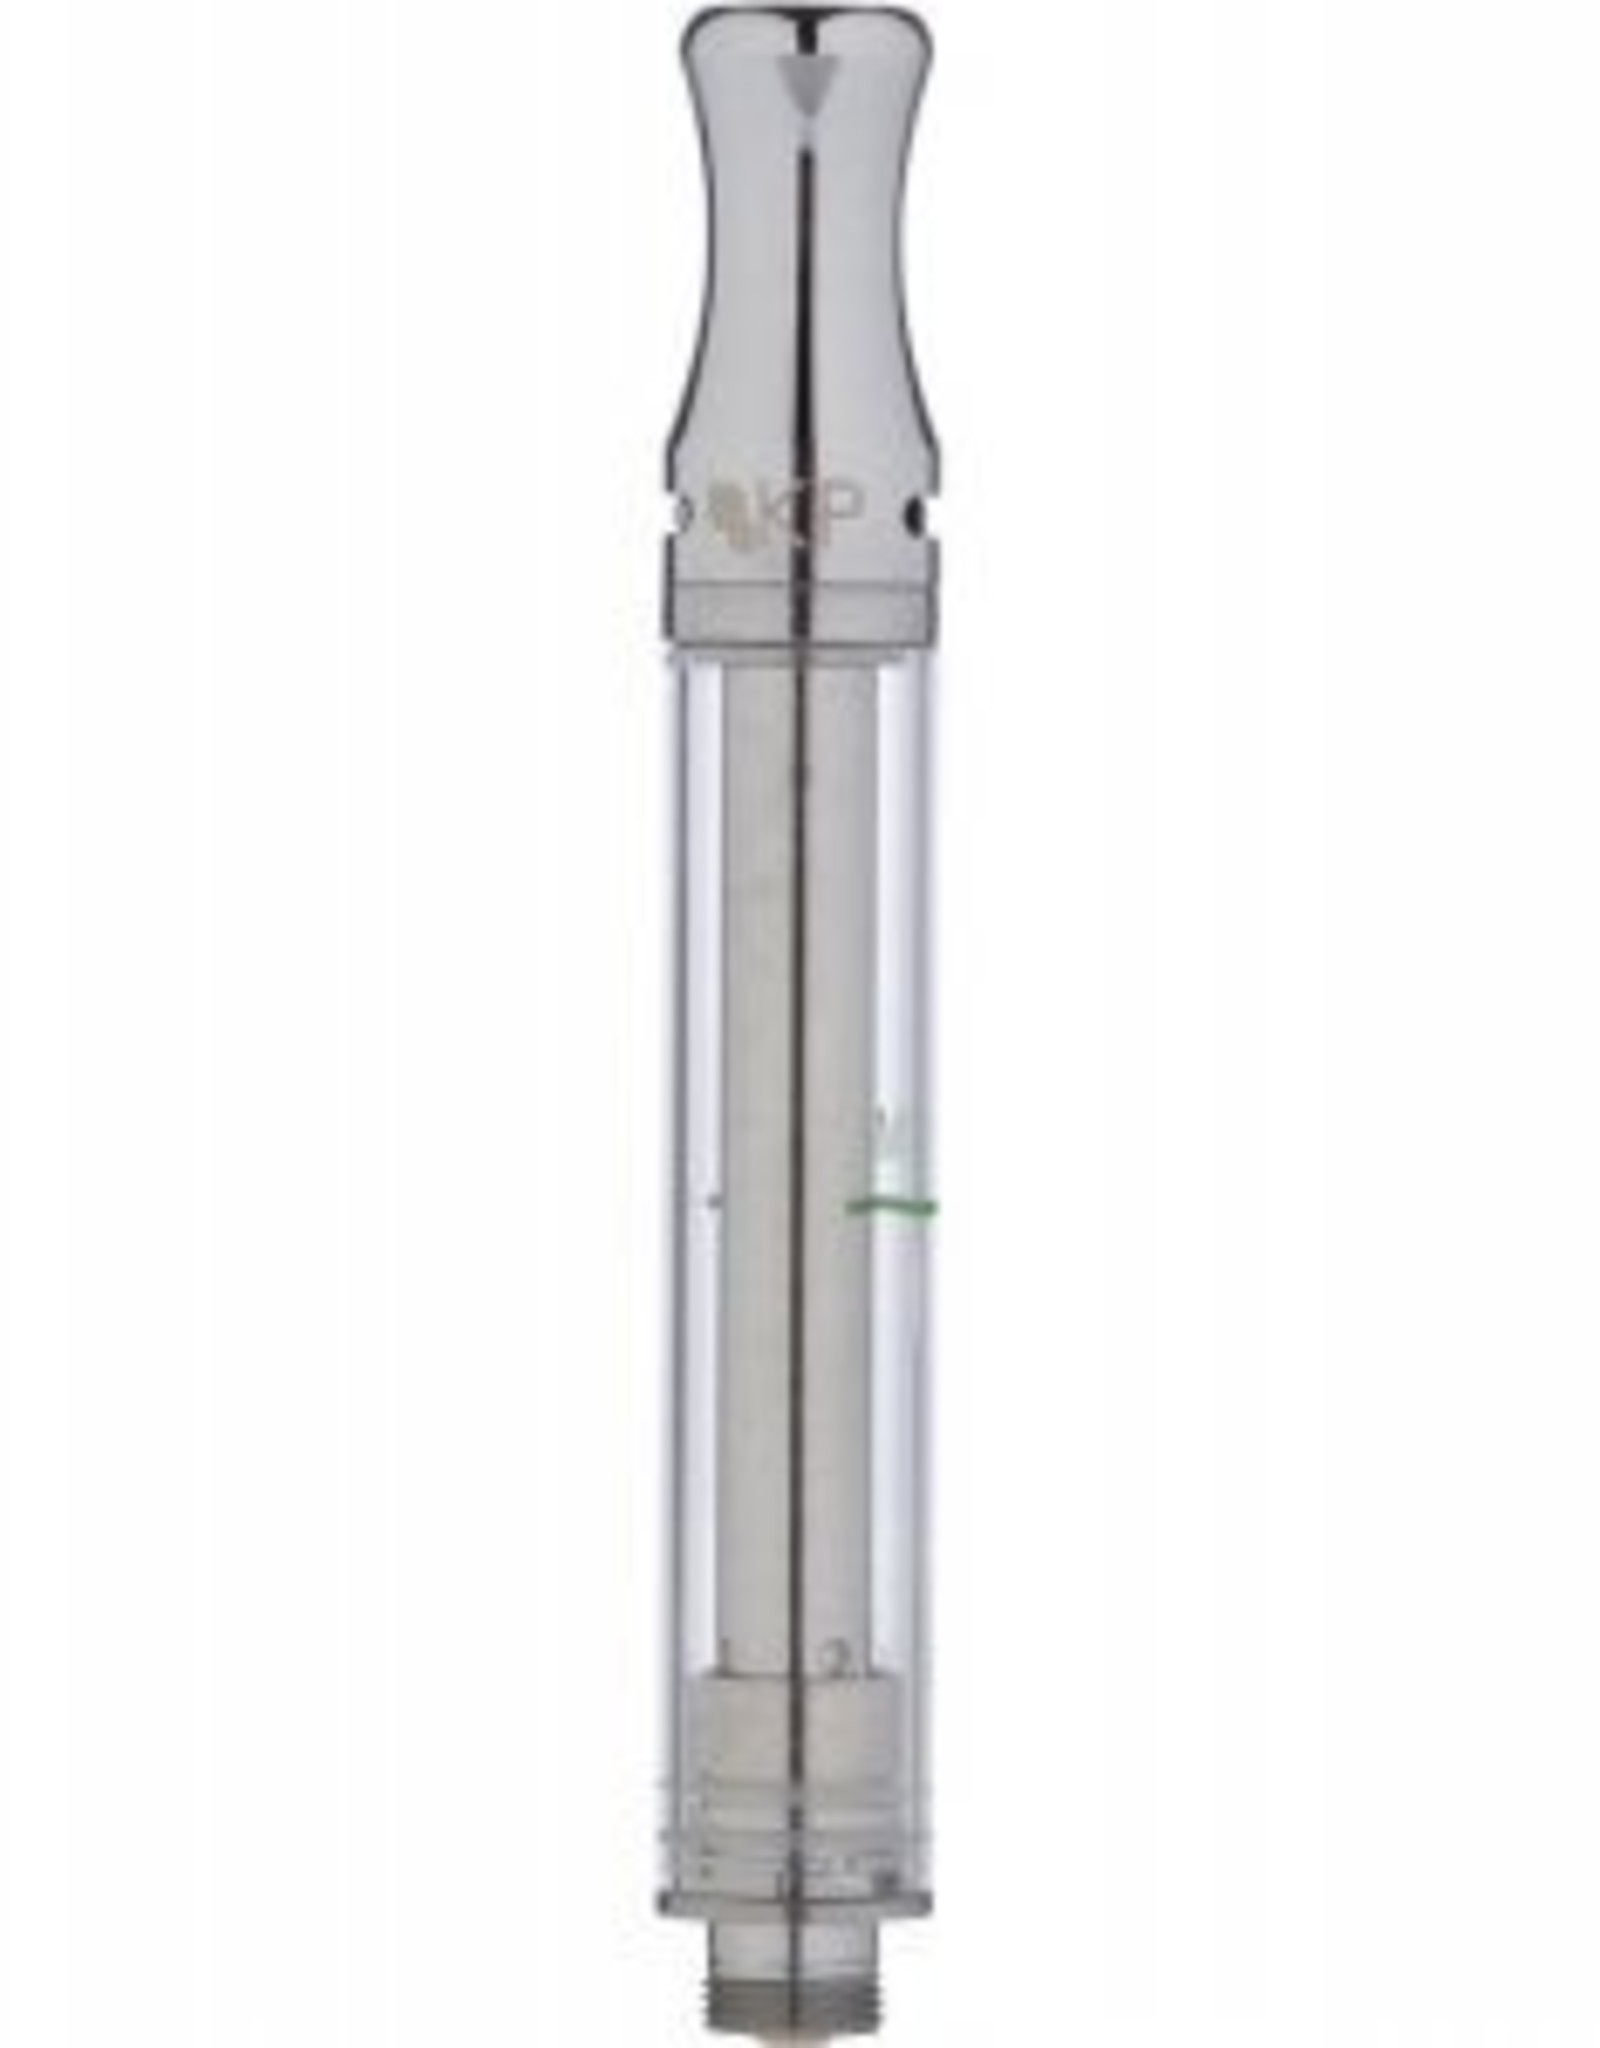 Kind Pen Kind Pen Glass/Wickless Airflow 510 Cartridge